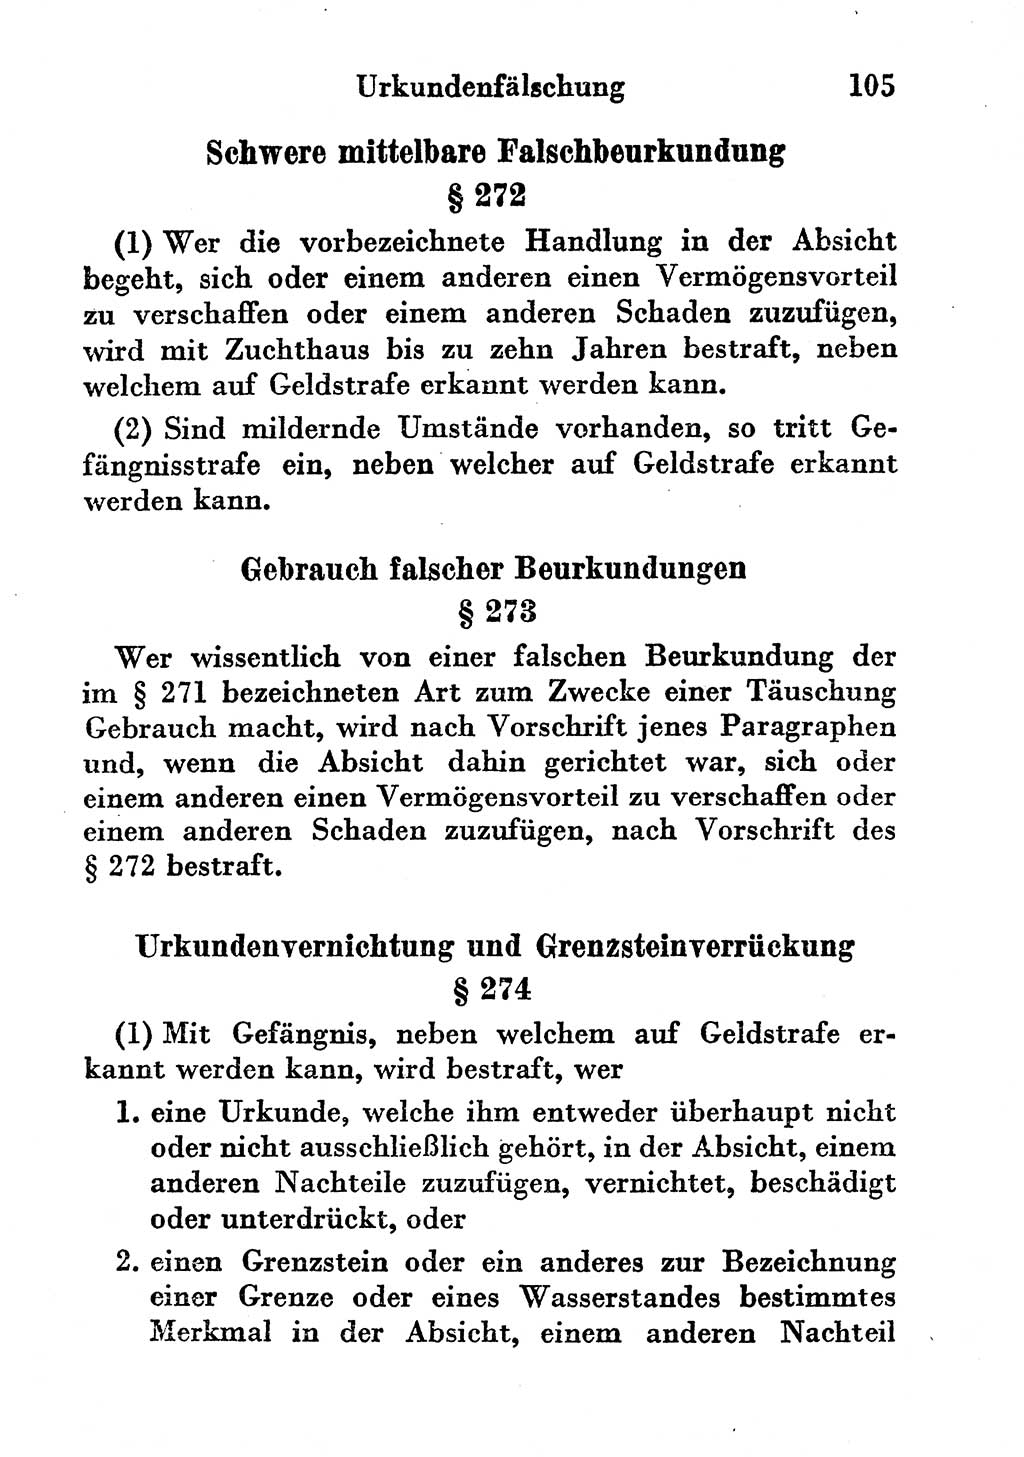 Strafgesetzbuch (StGB) und andere Strafgesetze [Deutsche Demokratische Republik (DDR)] 1956, Seite 105 (StGB Strafges. DDR 1956, S. 105)